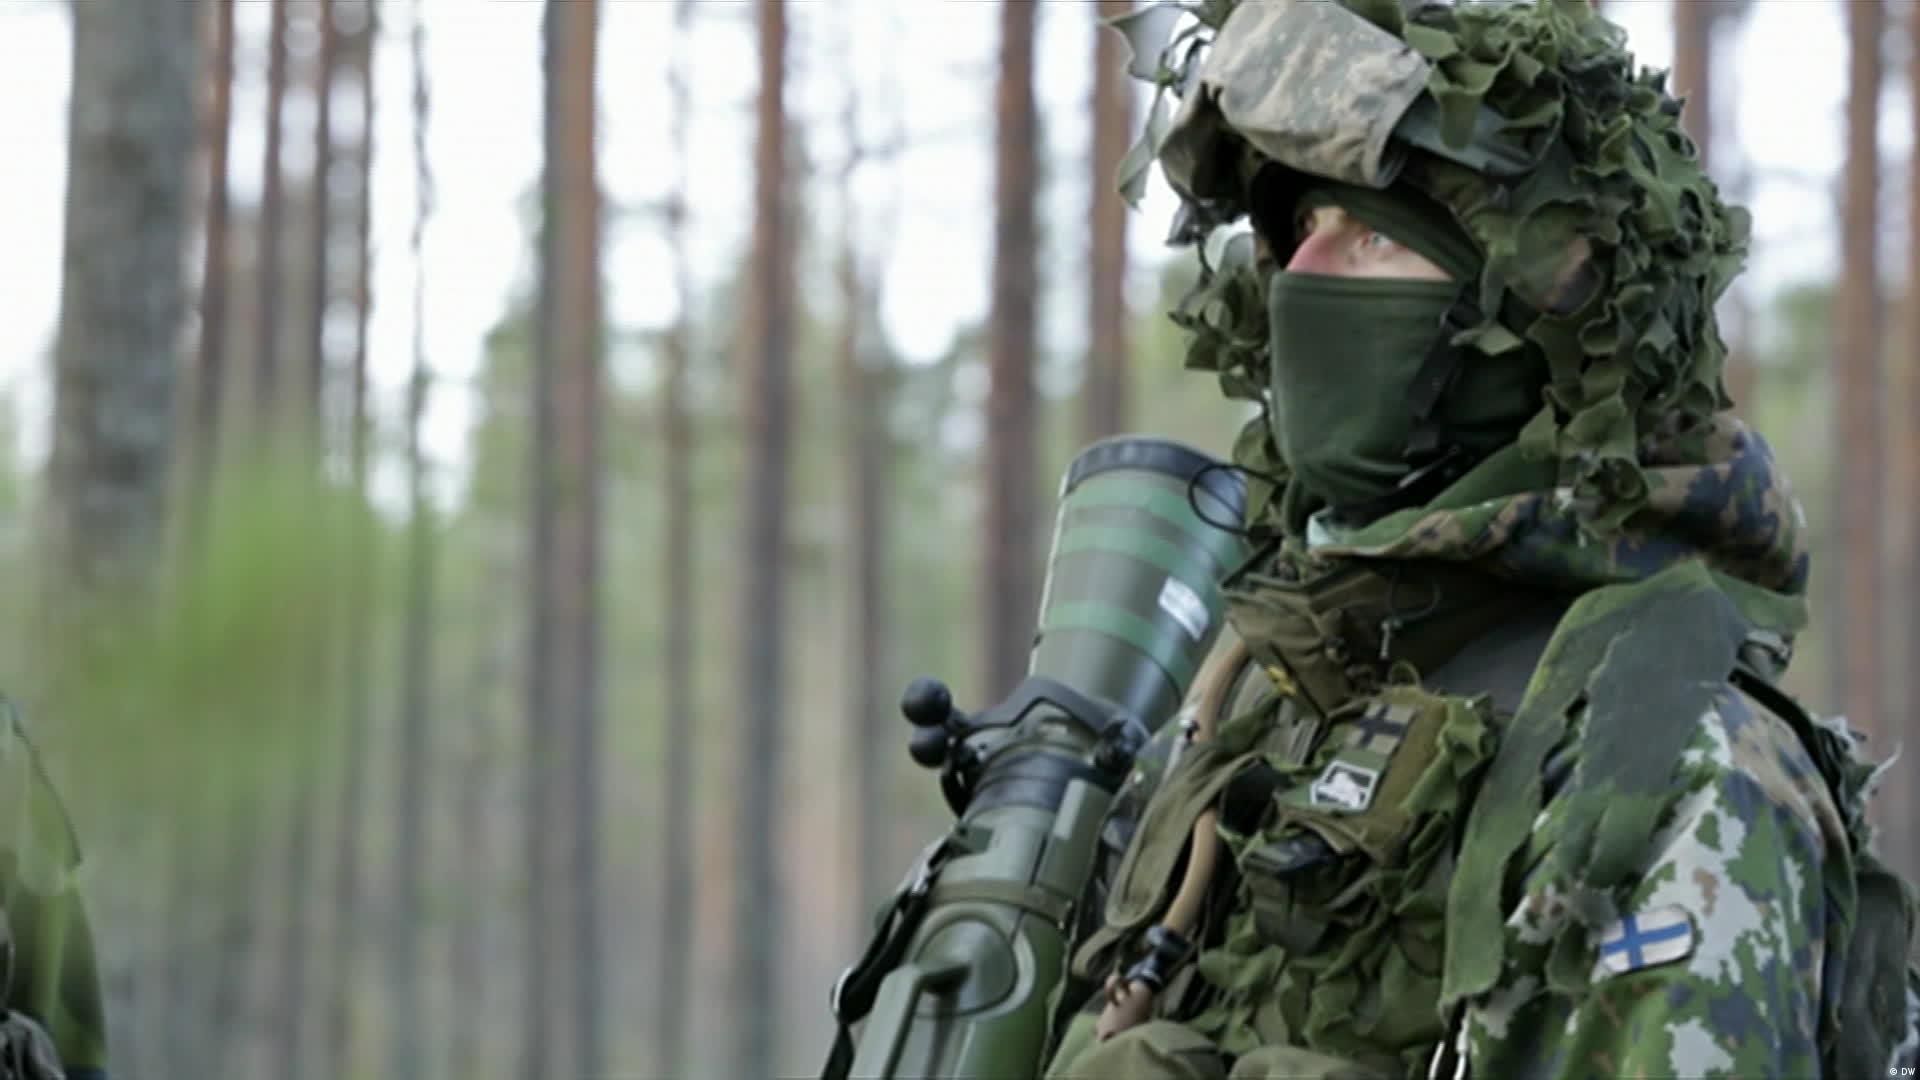 Фейк об украинском оружии в Финляндии – в Хельсинки заявили, что не имеют доказательств